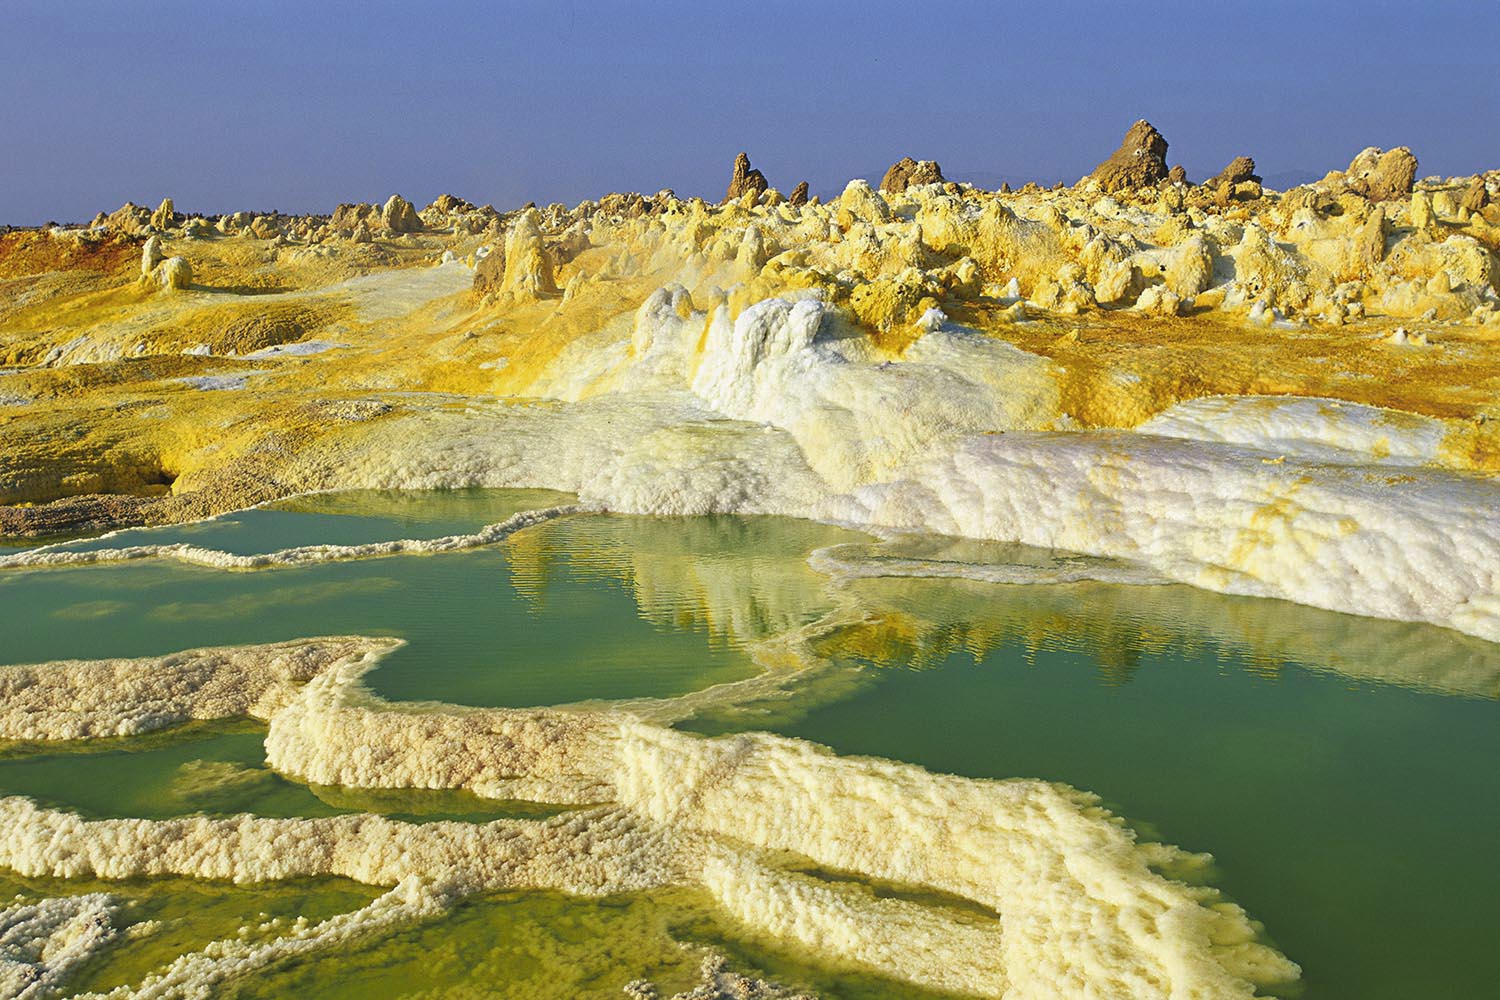 Especial Lugares muy calientes. Dallol es un cráter volcánico en el desierto de Danakil, Etiopía